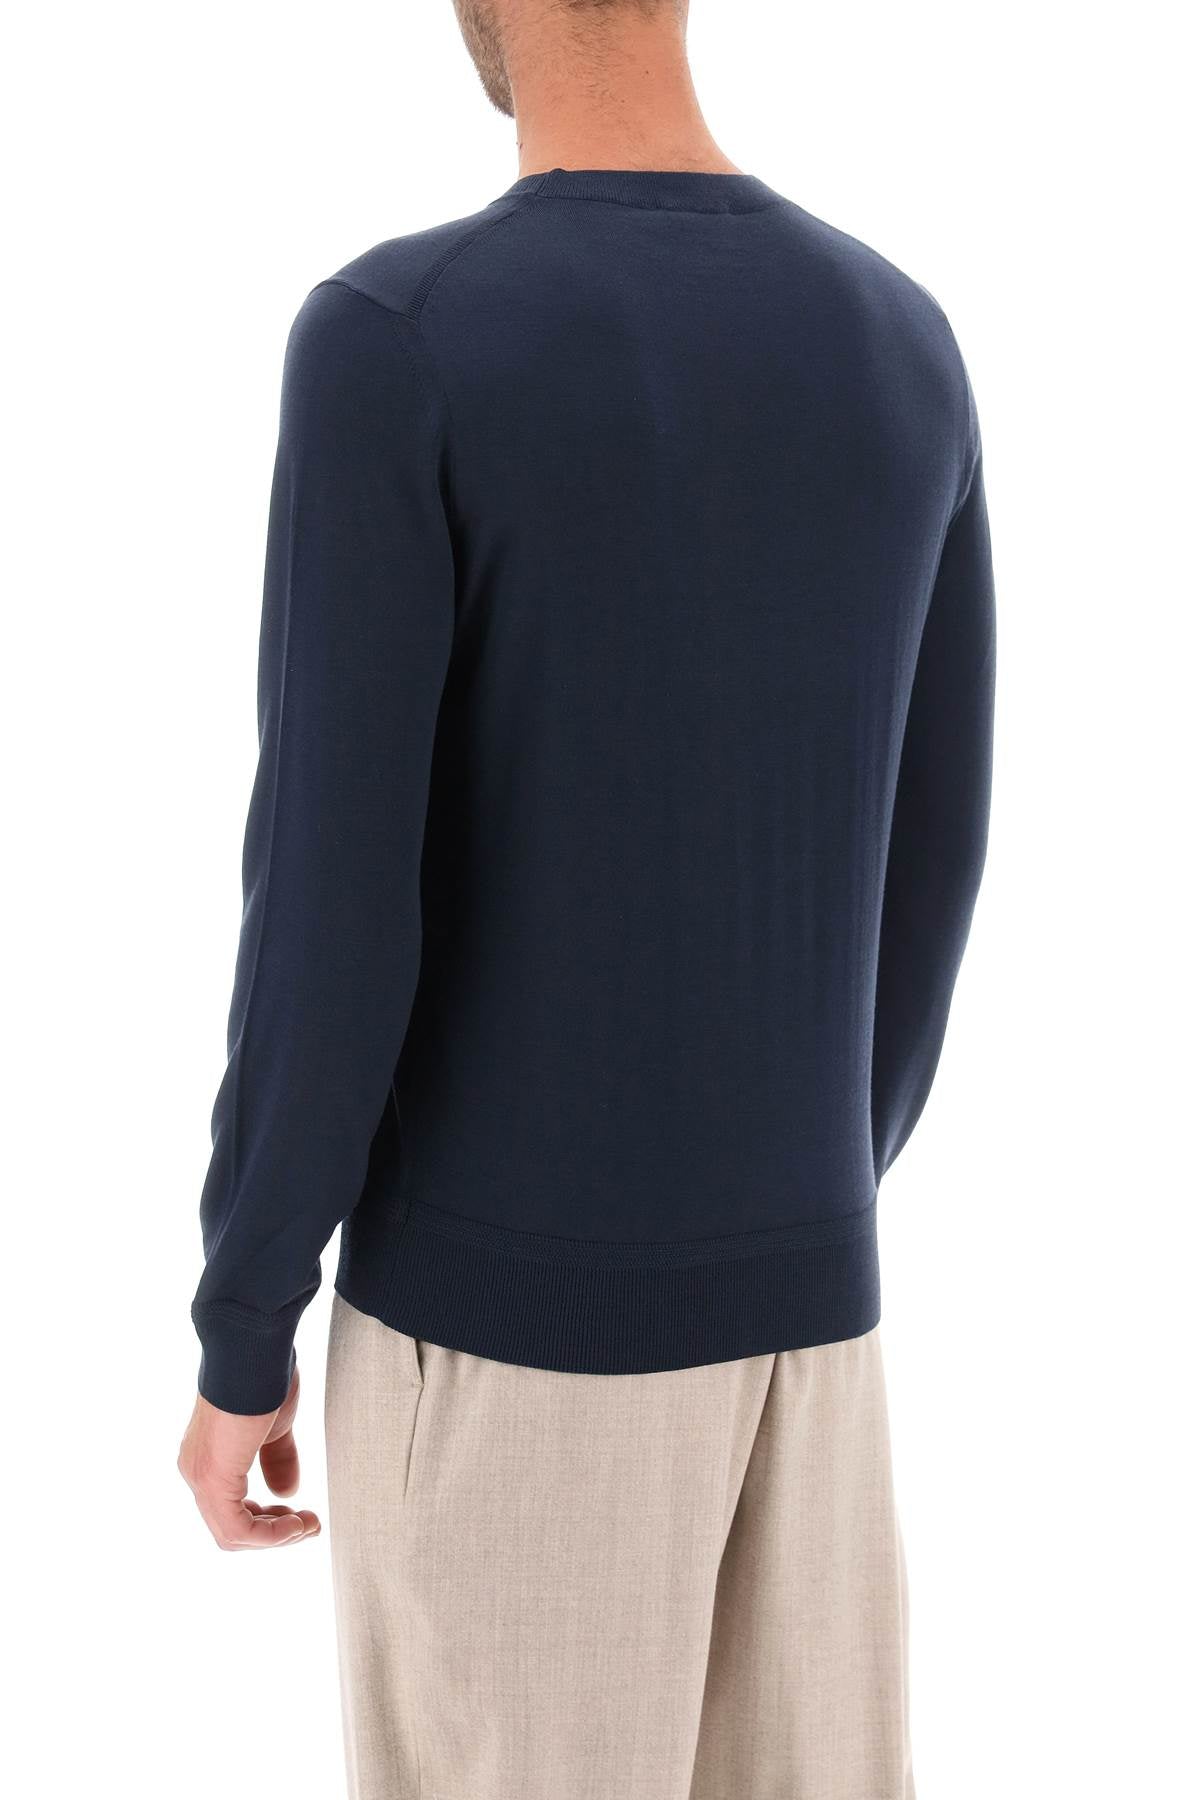 Áo len nam siêu sang - Cổ tròn nhẹ nhàng màu xanh